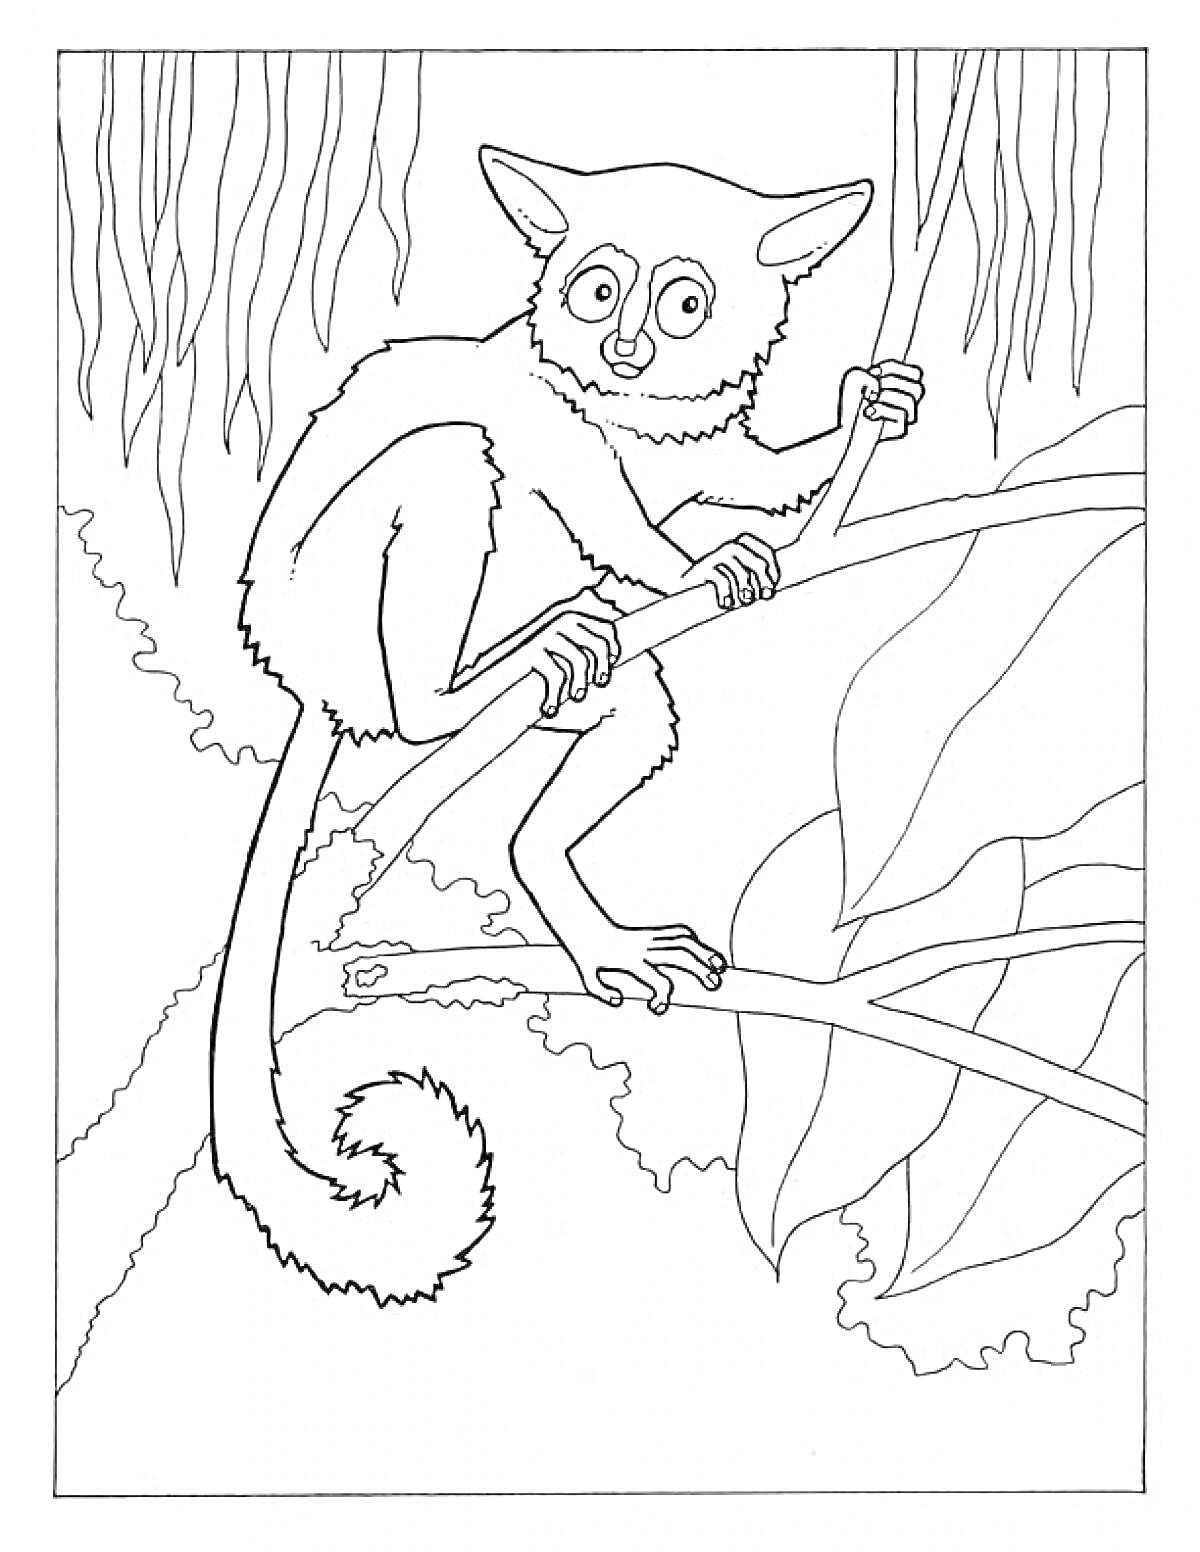 Раскраска Лемур на ветке деревьев в джунглях